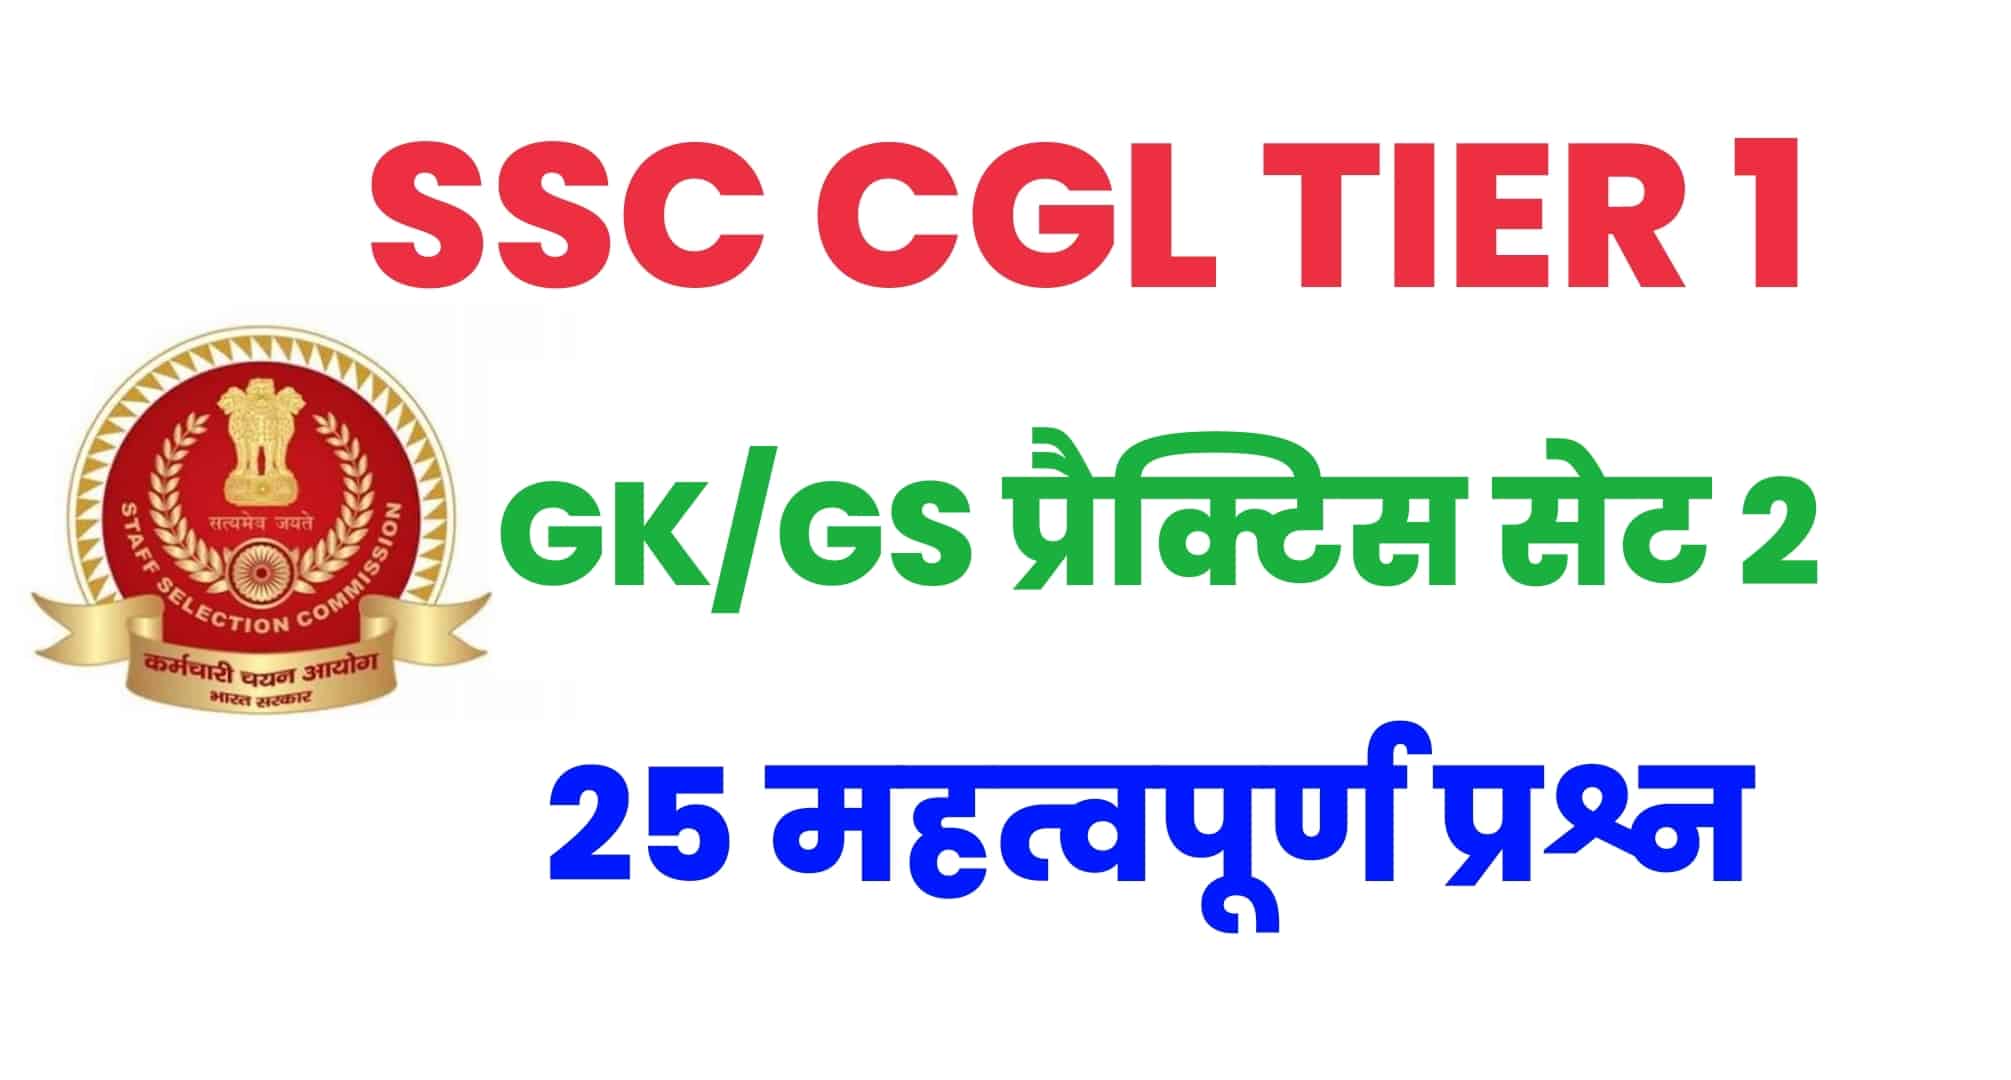 SSC CGL GK/GS प्रैक्टिस सेट 2 : परीक्षा से पहले कर लें GK/GS के इन महत्वपूर्ण 25 प्रश्नों का अध्ययन